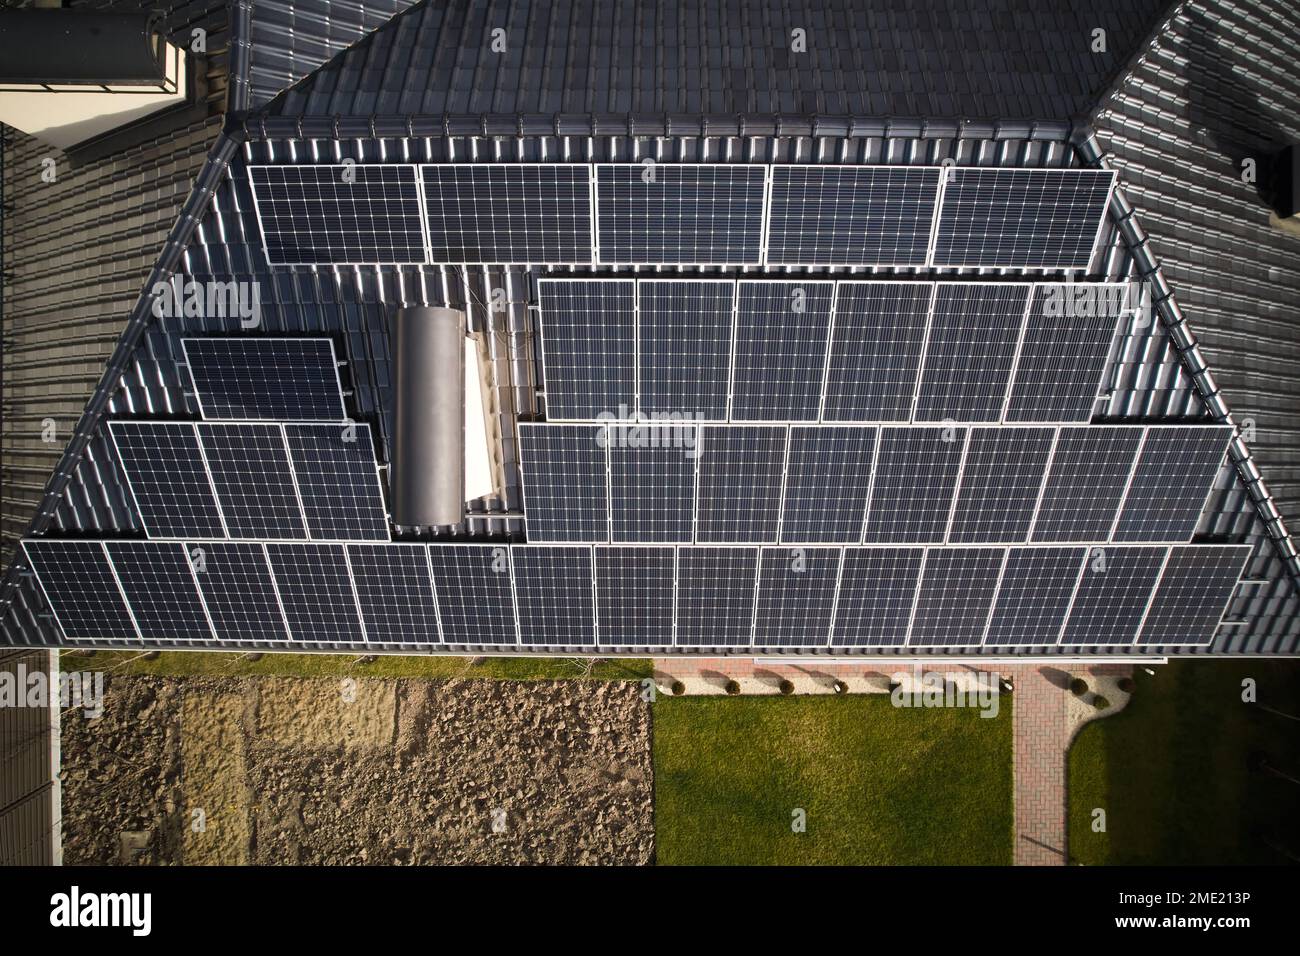 Casa residenziale con impianto solare fotovoltaico sul tetto. Tetto da costruzione con moduli solari per la generazione di energia elettrica per effetto fotovoltaico. Concetto di risorse sostenibili per l'alimentazione. Foto Stock